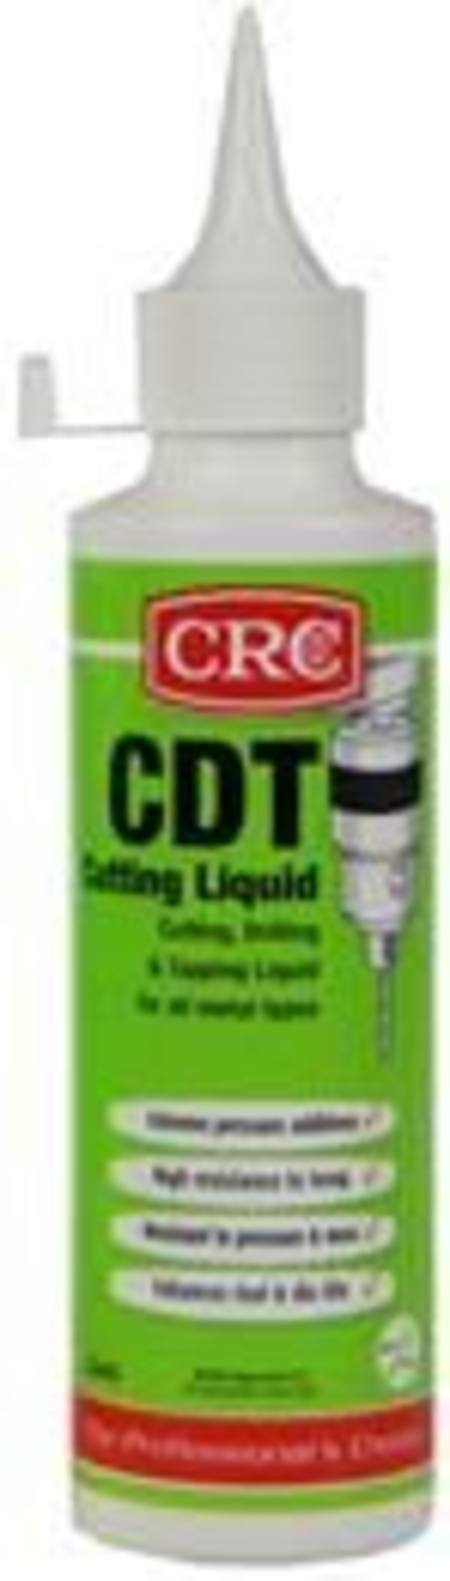 Buy CRC CDT CUTTING LIQUID 250ml in NZ. 